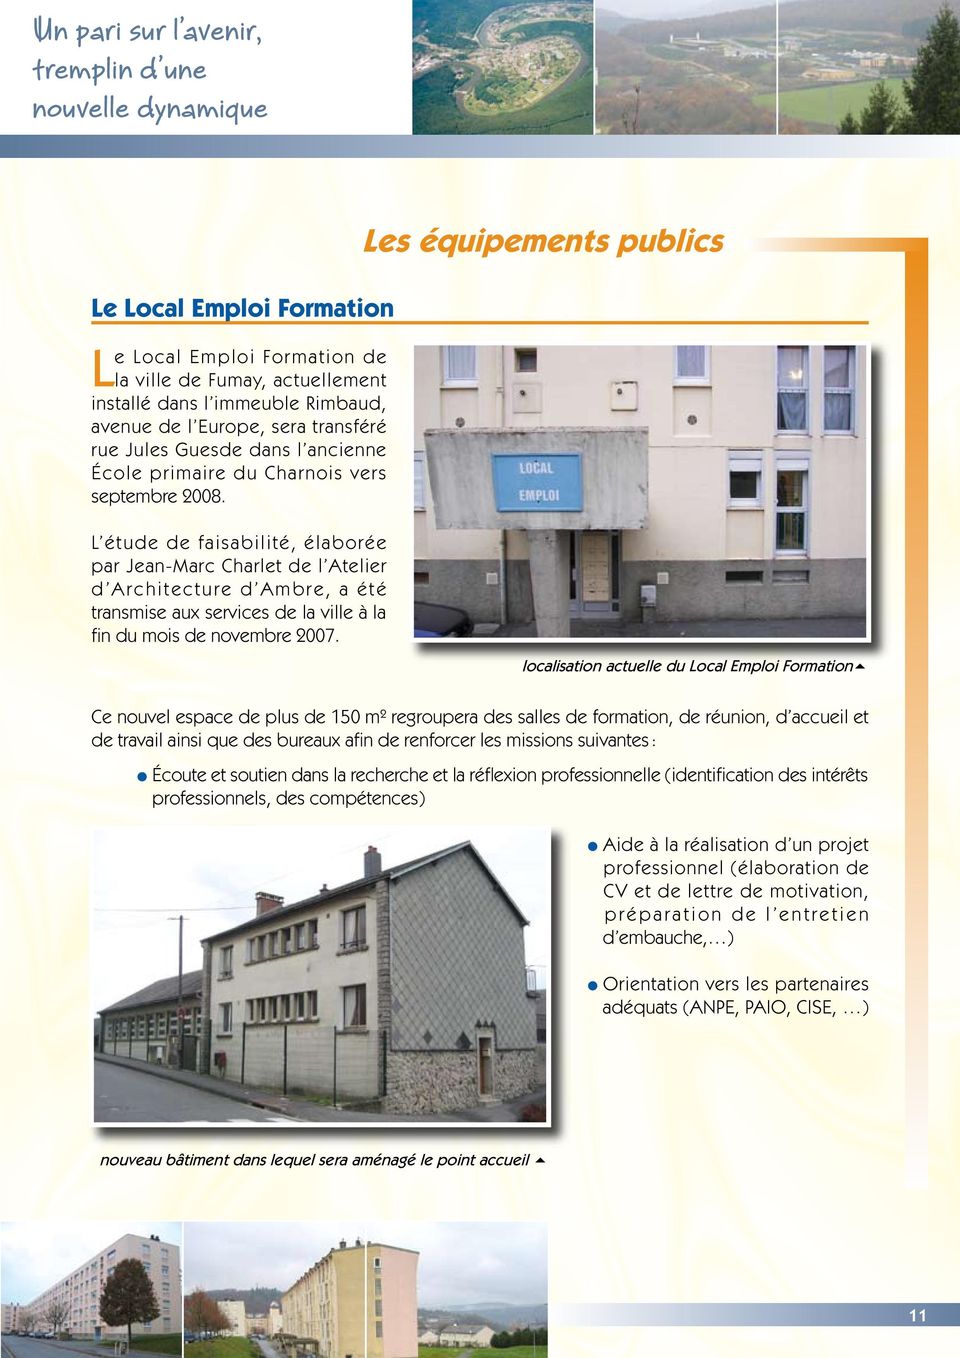 L étude de faisabilité, élaborée par Jean-Marc Charlet de l Atelier d Architecture d Ambre, a été transmise aux services de la ville à la fin du mois de novembre 2007.